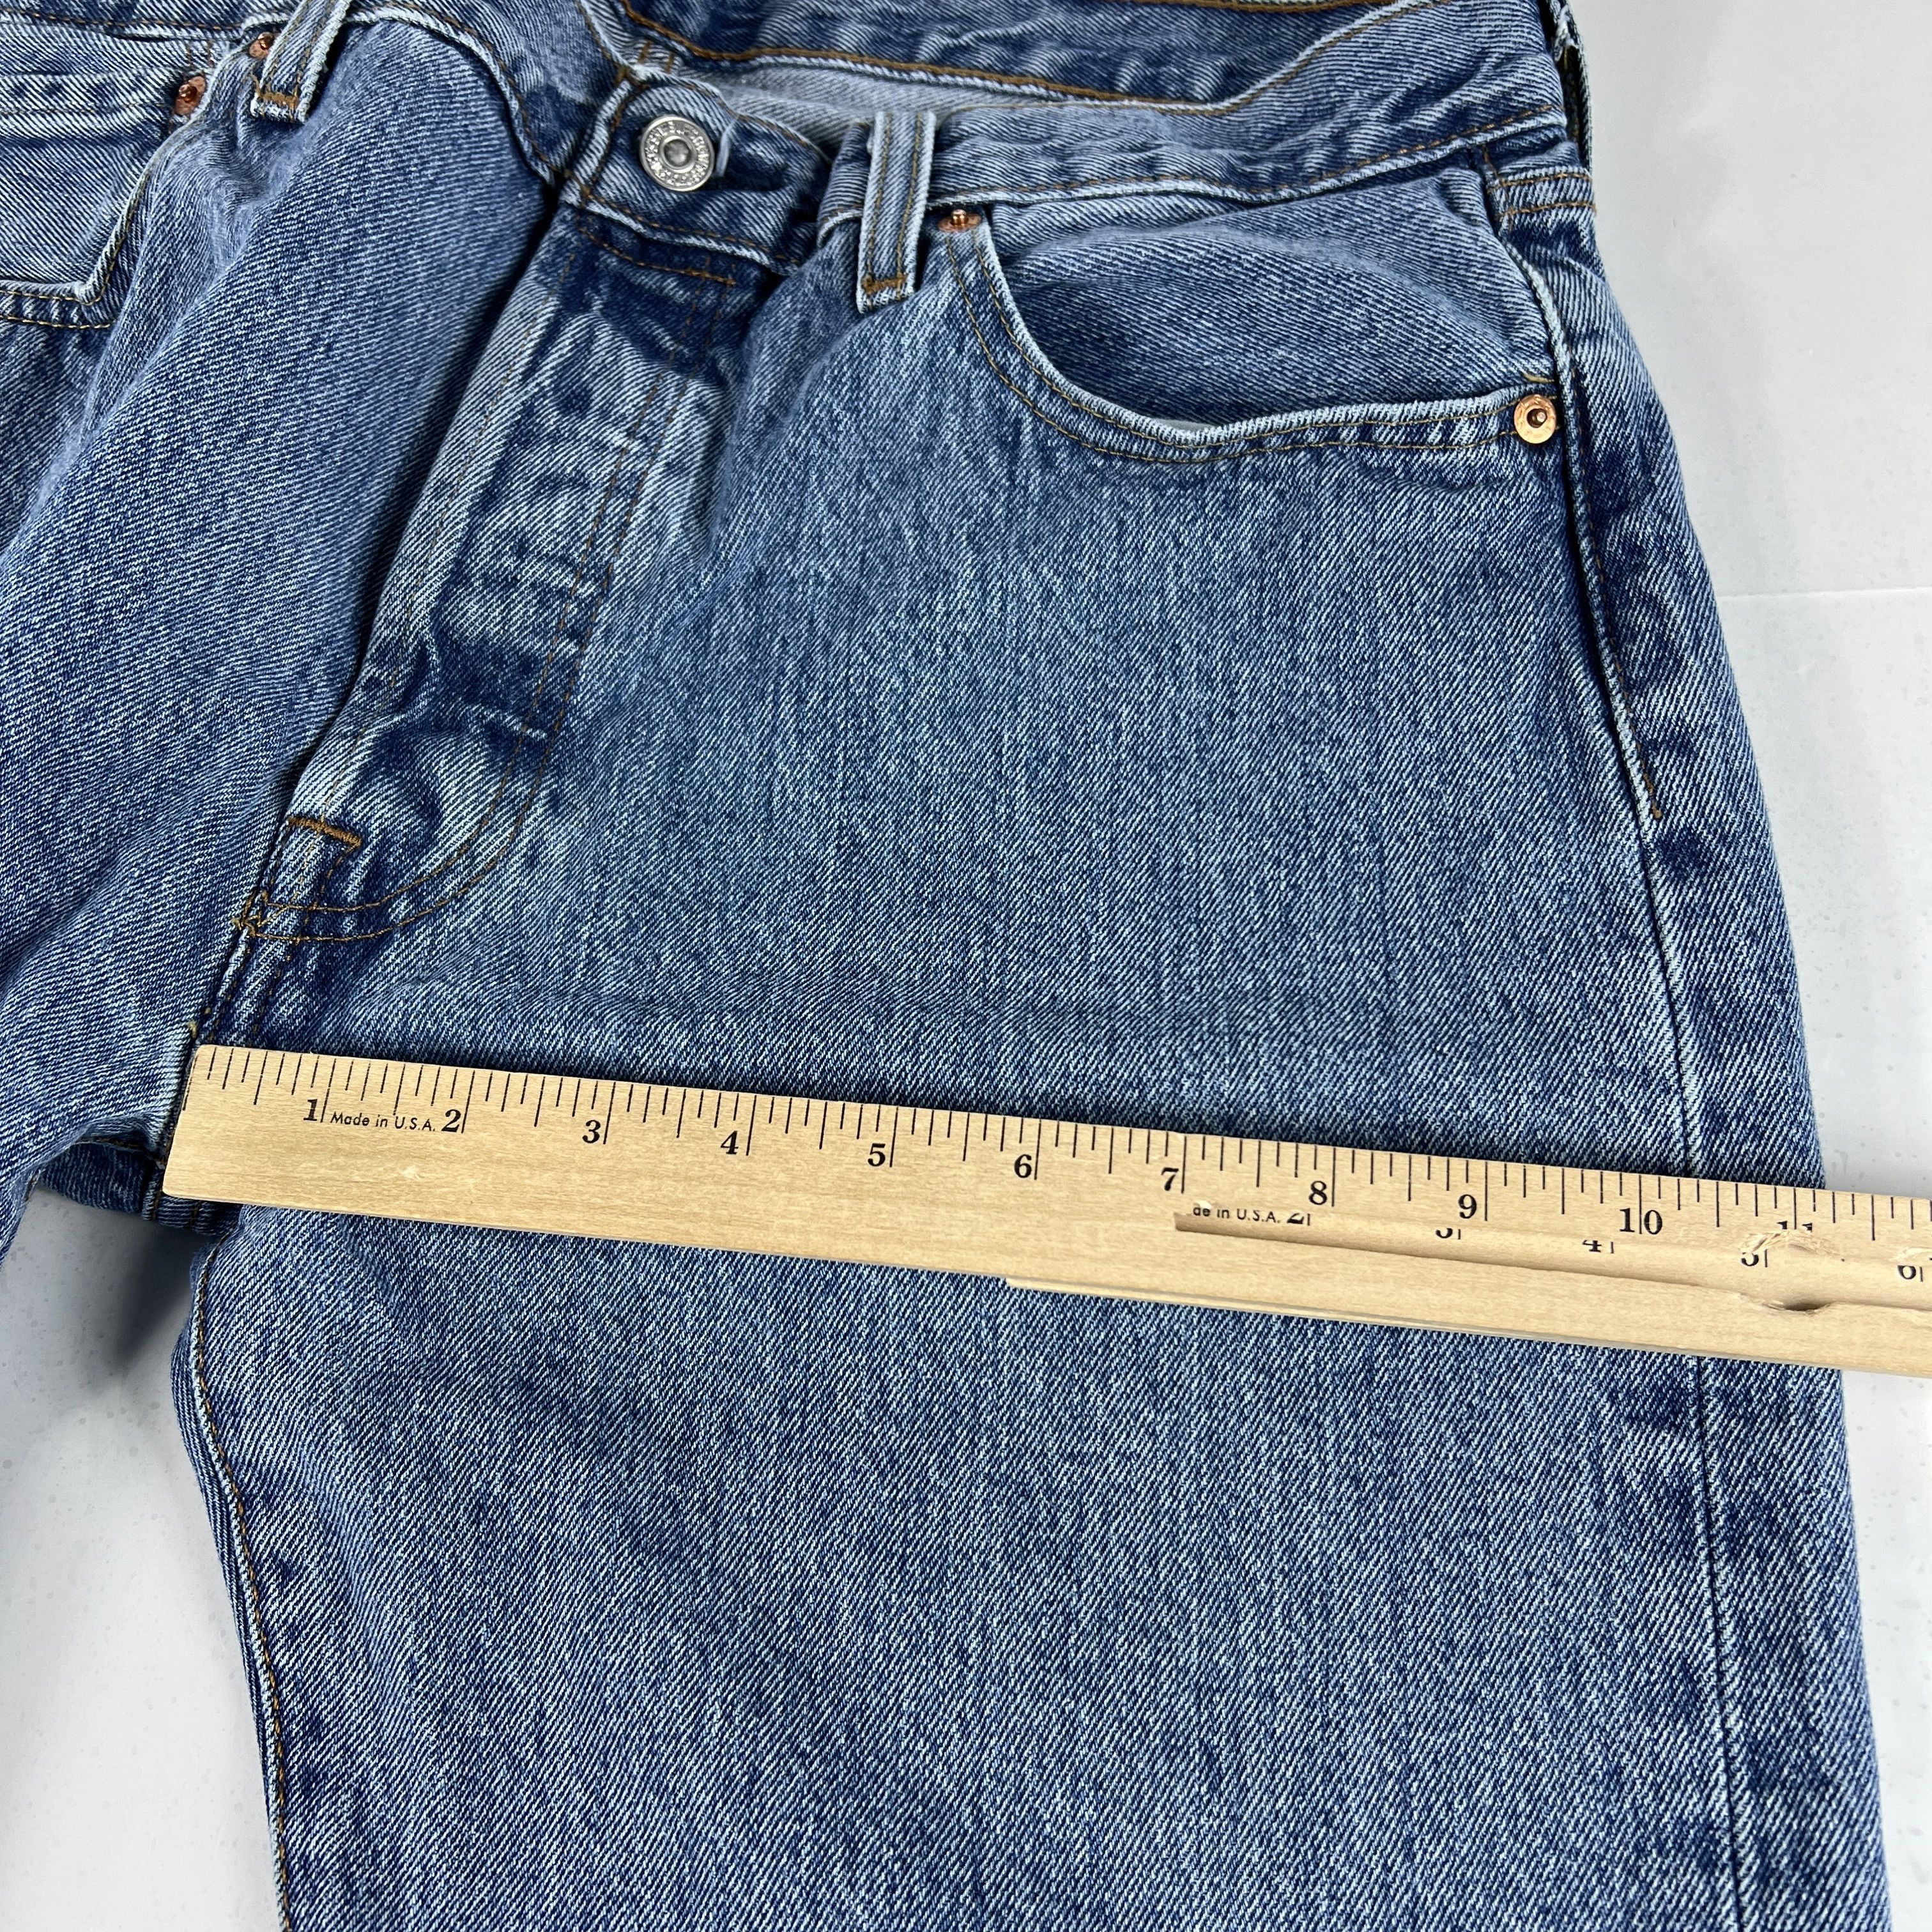 Levi's Levi's Jeans 501 XX Original Straight Blue Cotton Denim Size US 33 - 21 Thumbnail